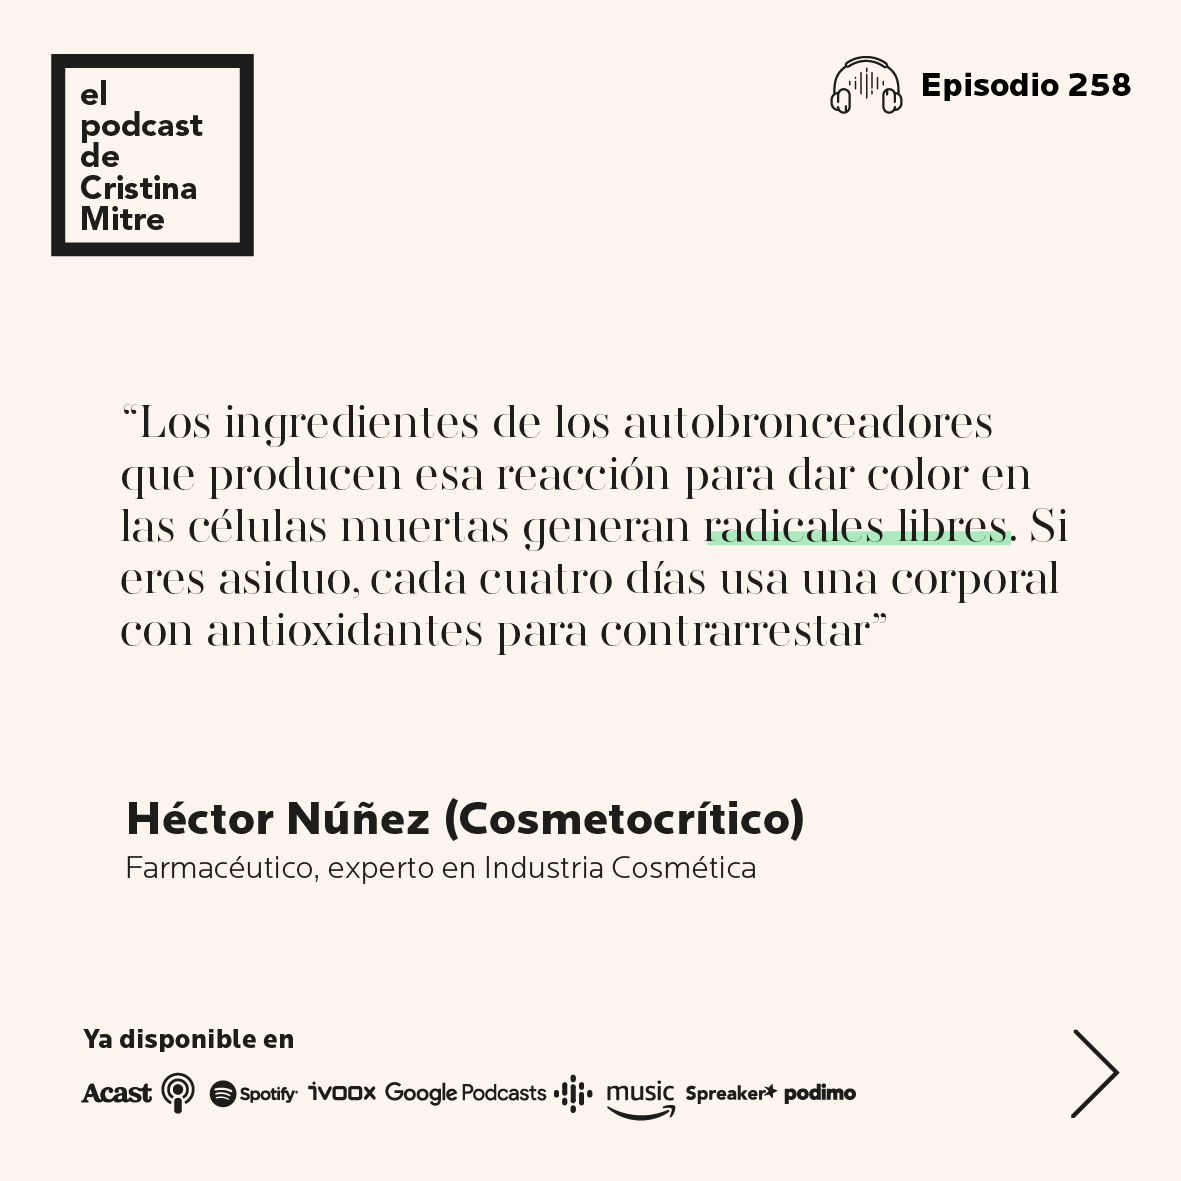 el podcast de cristina mitre hector Nuñez autobronceador